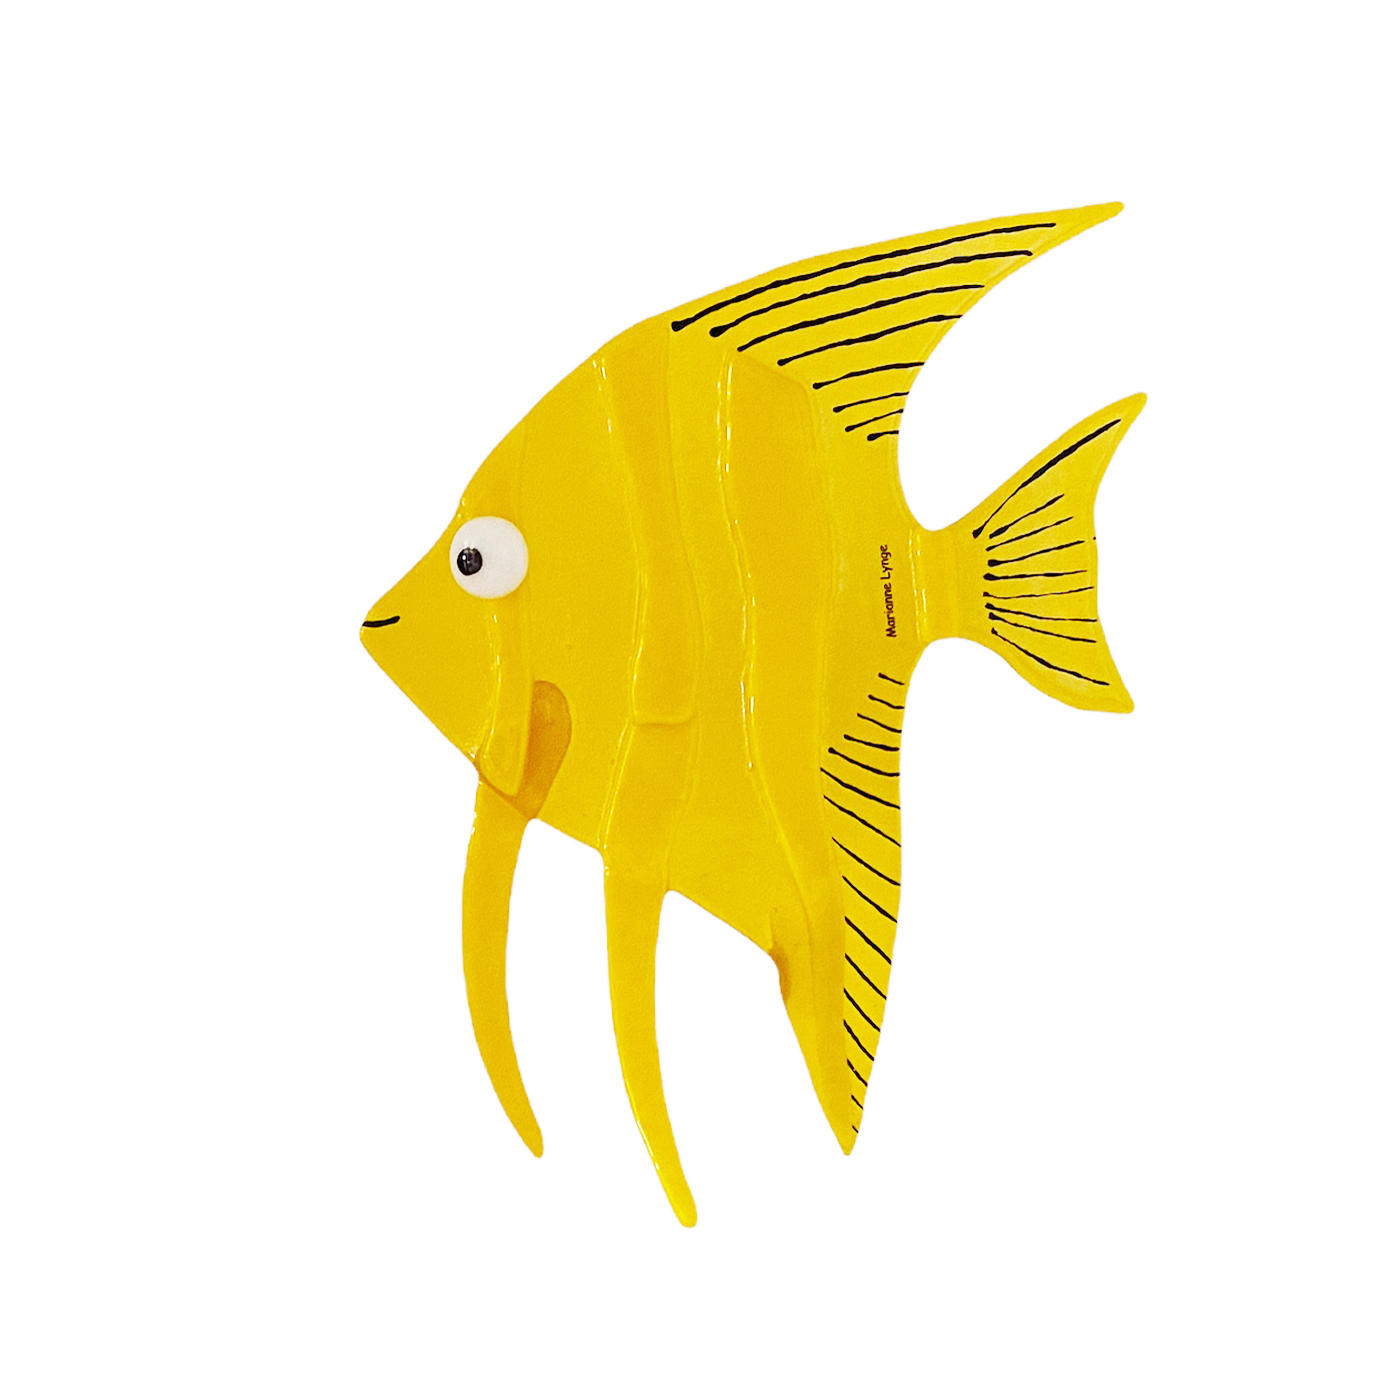 Marianne glaskunst - Glas fisk "Gul" der står på finner hale